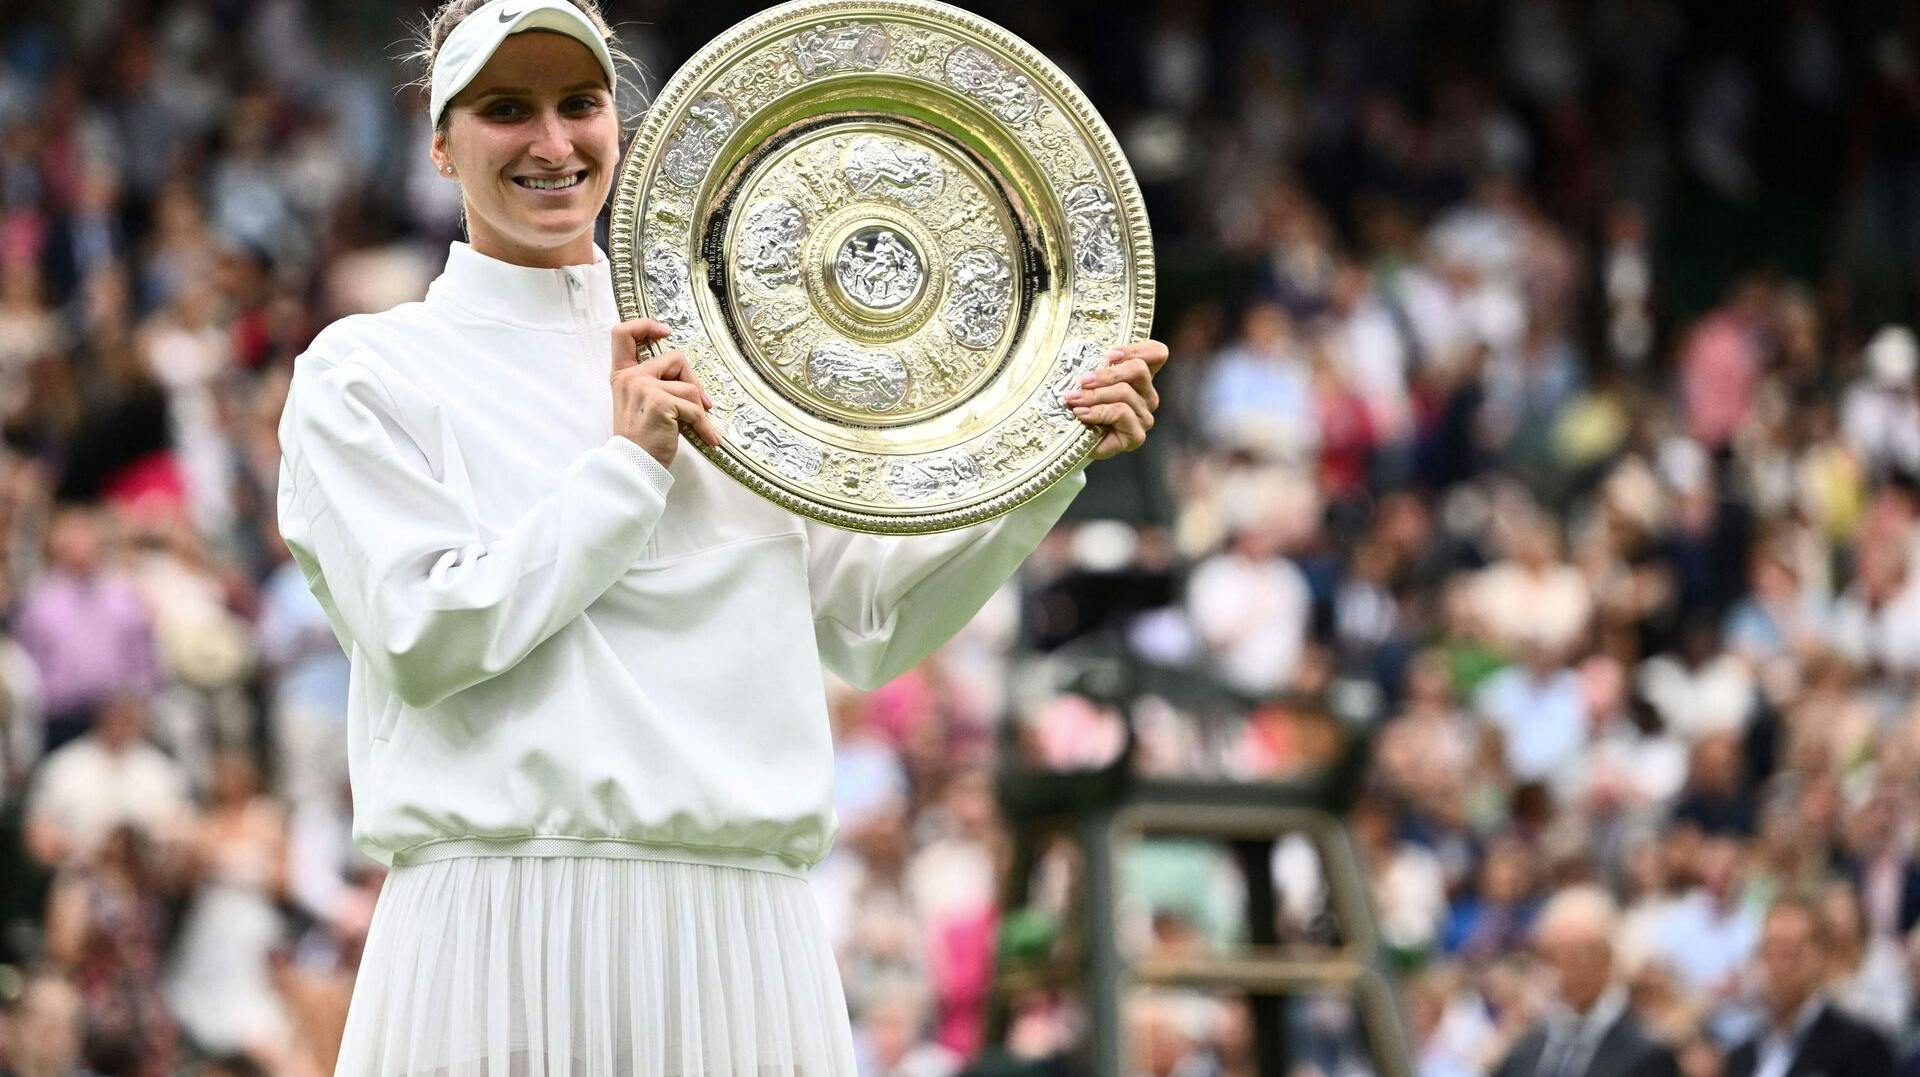 Vondroušová skrev historie, da hun i sommer vandt Wimbledon som useedet i turneringen.&nbsp;